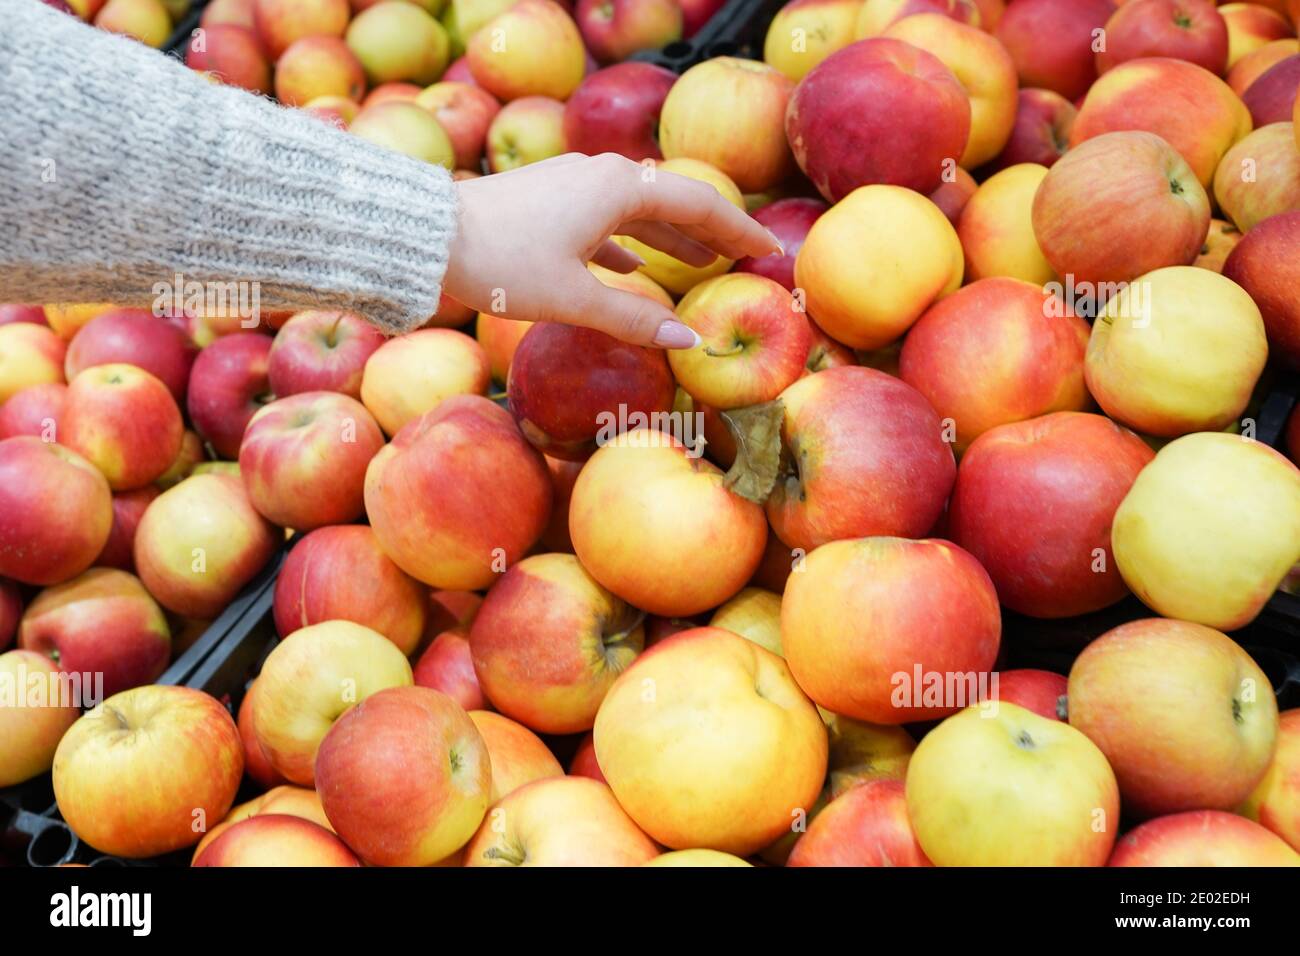 Ragazza con un Apple in mano contro i frutti. Il concetto di shopping nel mercato Foto Stock